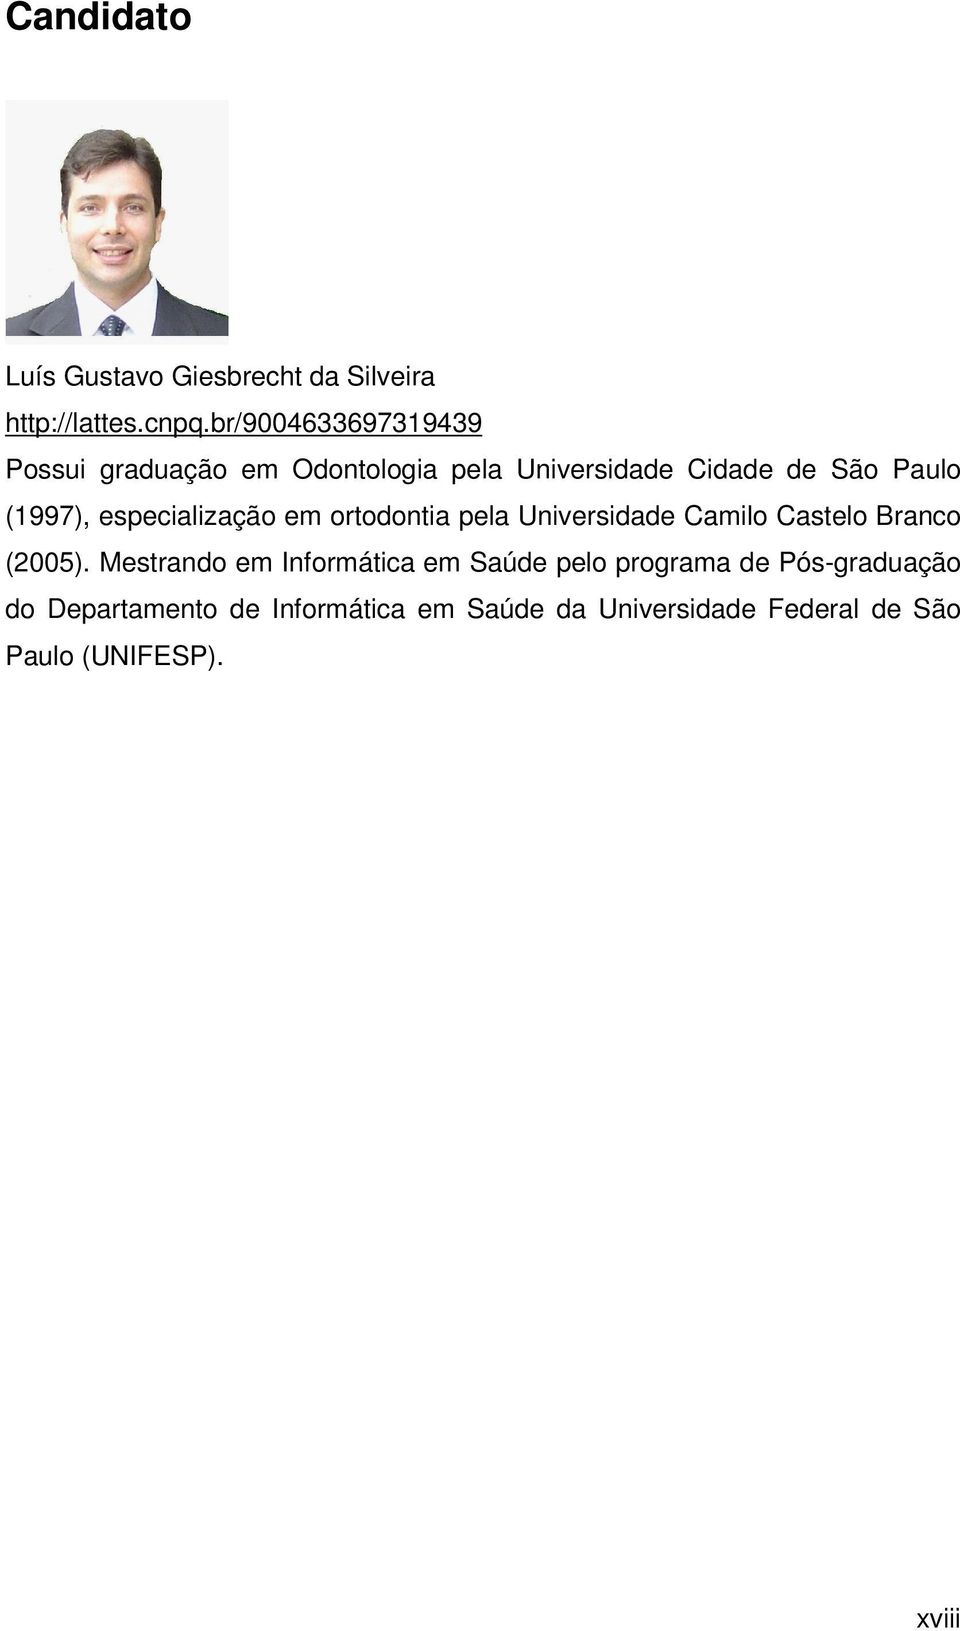 especialização em ortodontia pela Universidade Camilo Castelo Branco (2005).